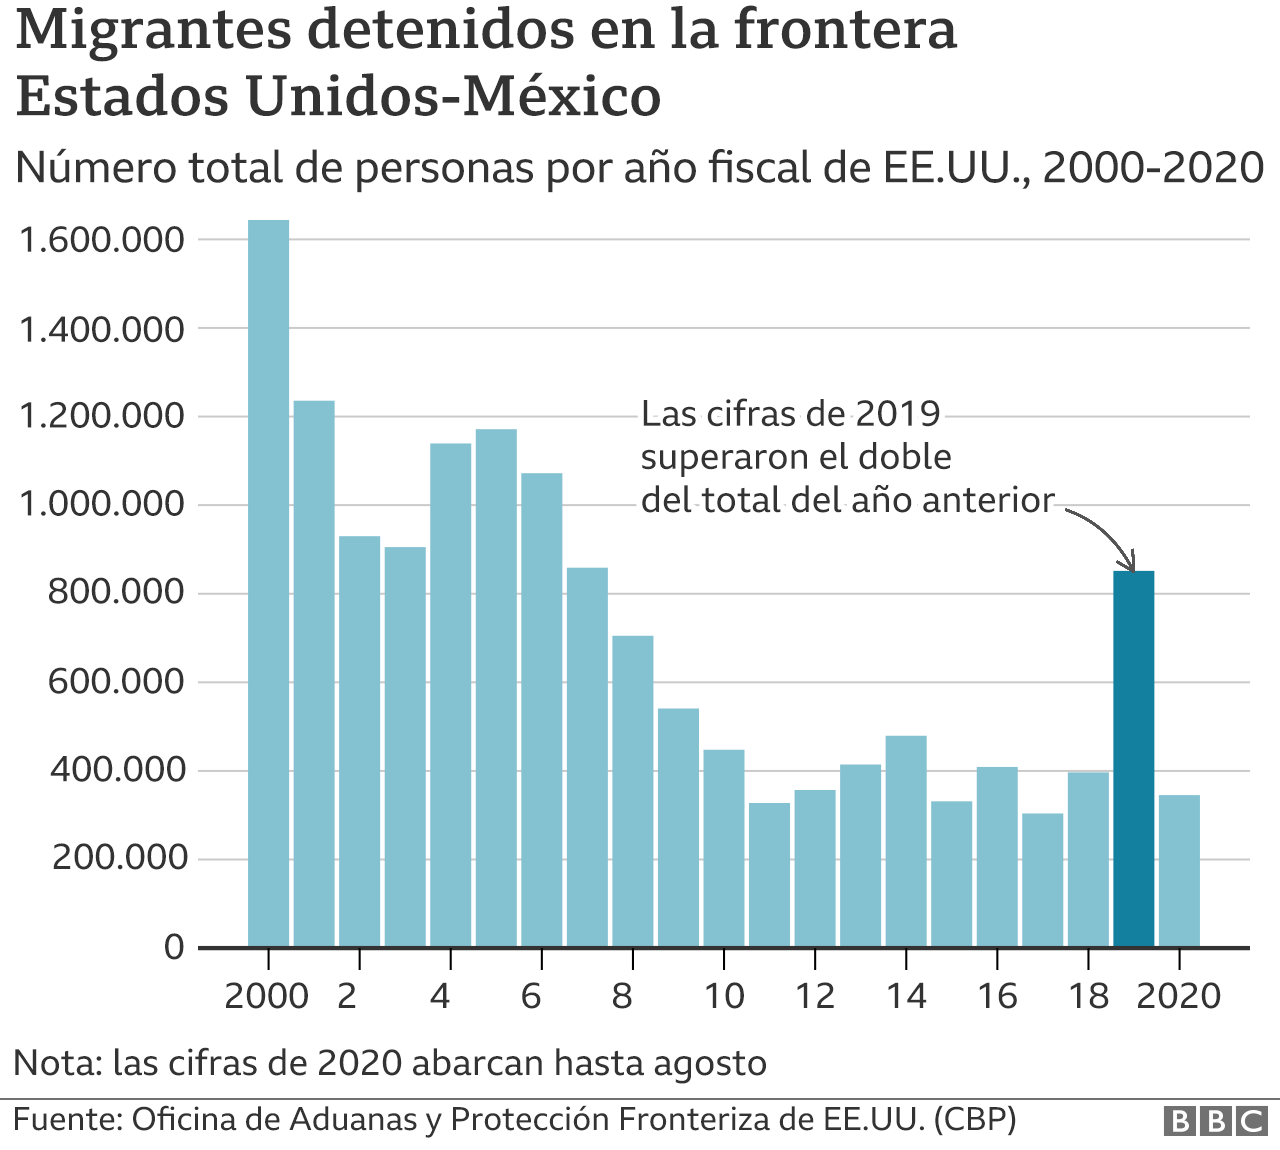 Gráfico de detenciones en la frontera EE.UU.-México